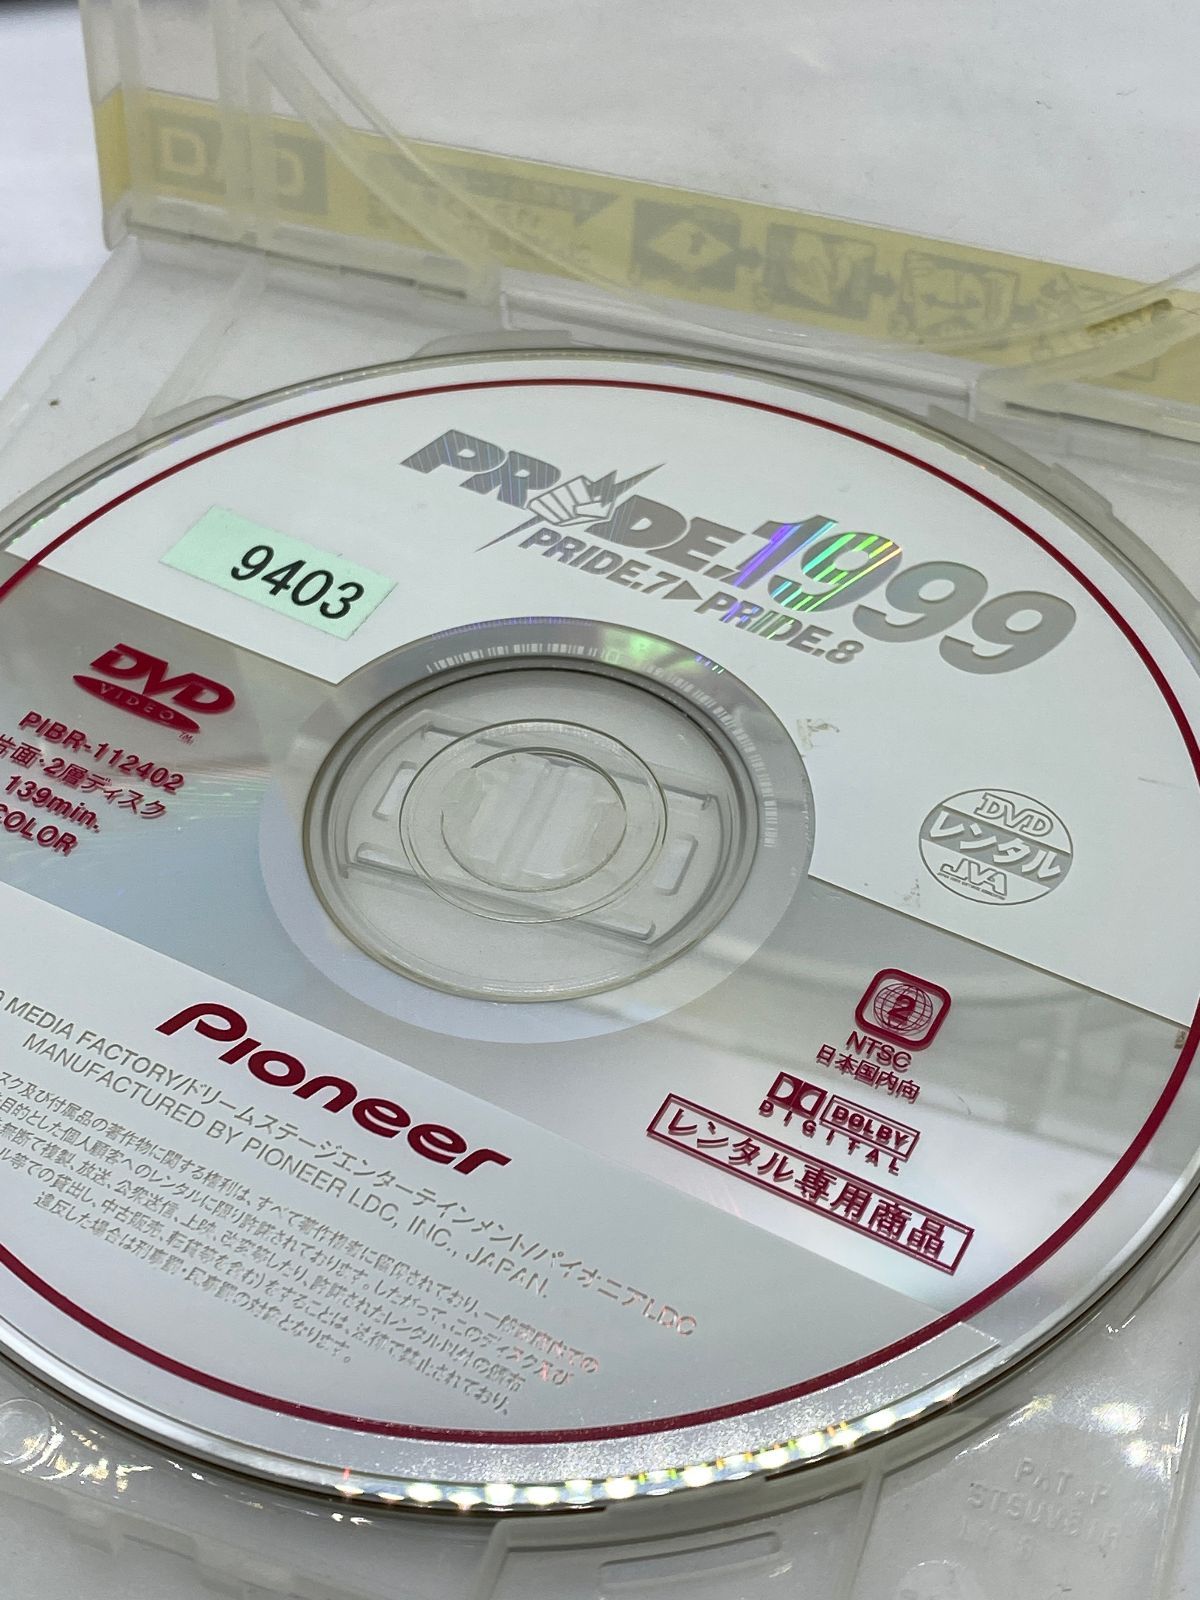 Y9 02608 - プライド1999 2枚セット DVD 送料無料 レンタル専用